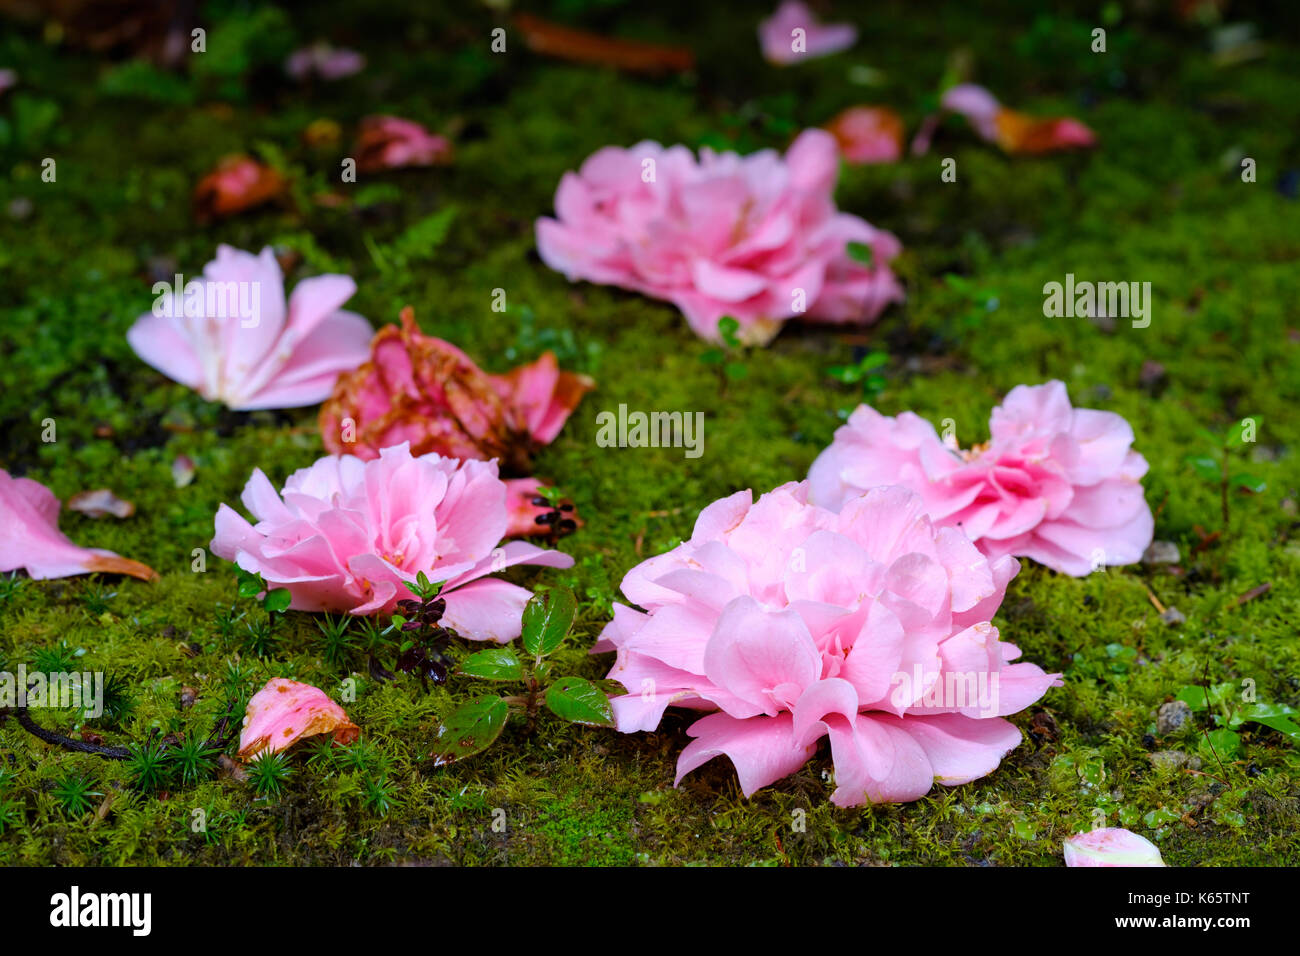 Desapareció de las flores de la camelia (camellia) están acostados en el suelo, trewidden jardín, cerca de Penzance, Cornwall, Inglaterra, Gran Bretaña Foto de stock